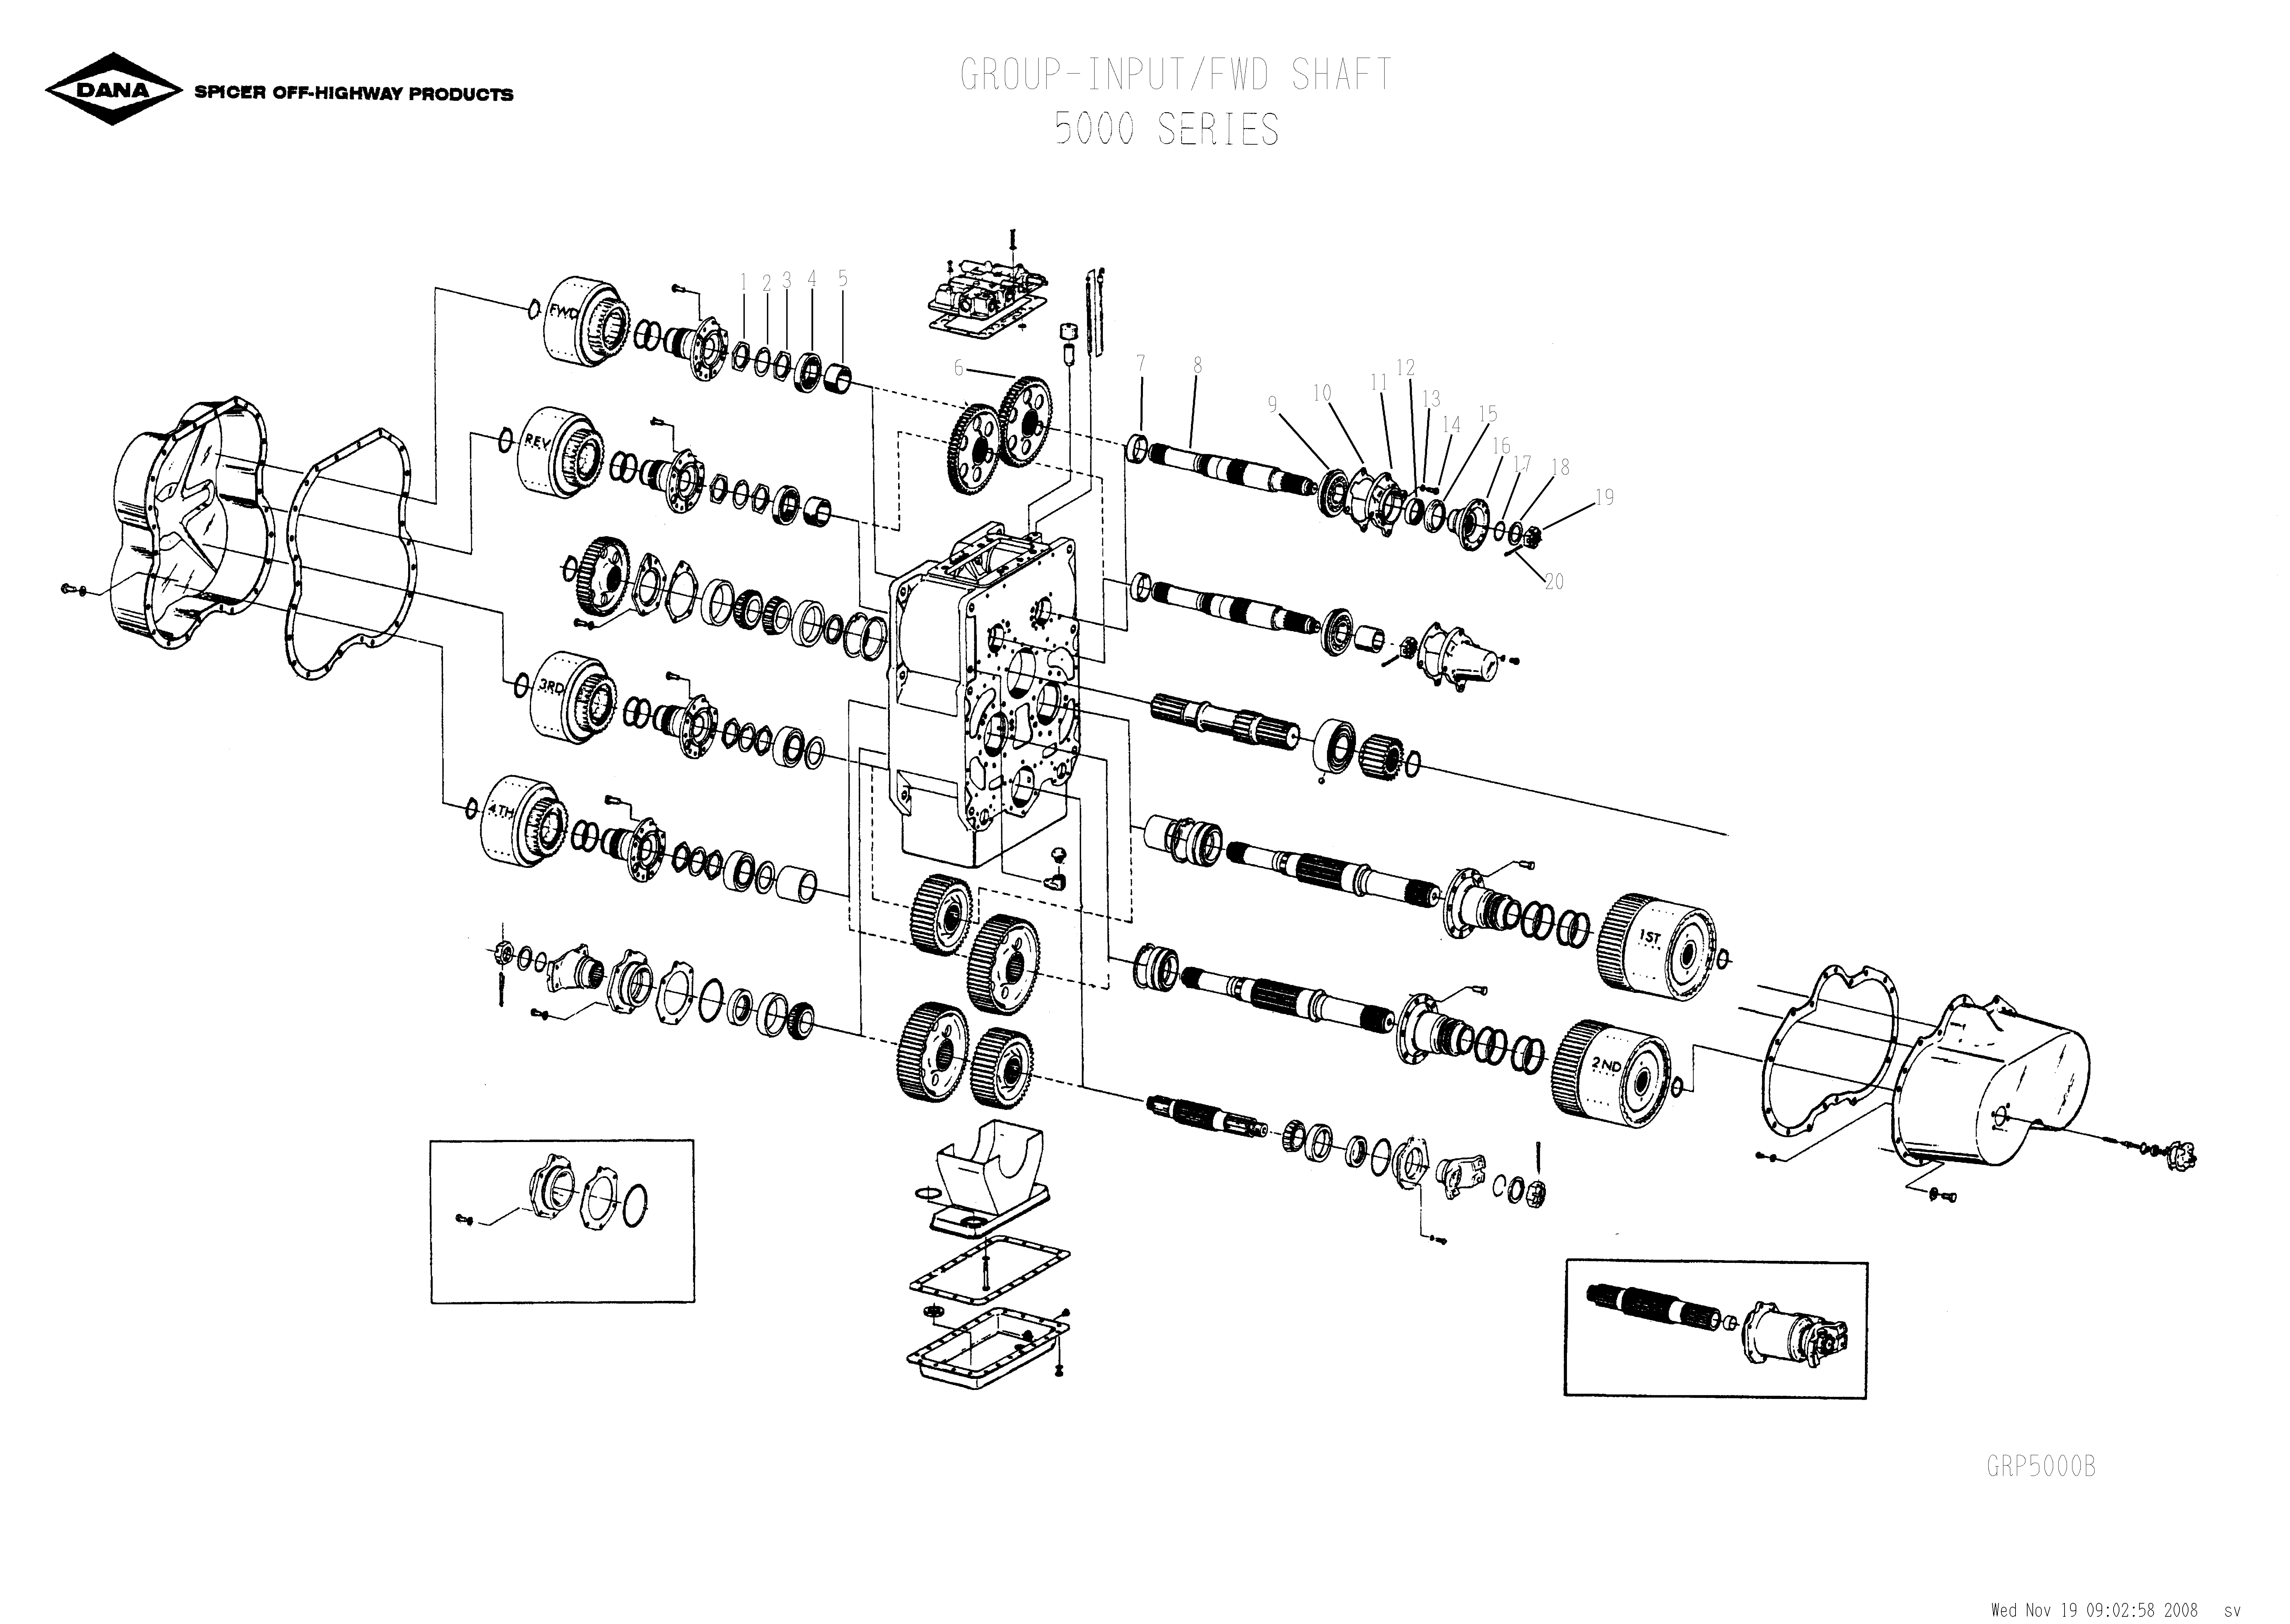 drawing for SCHOEMA, SCHOETTLER MASCHINENFABRIK K24.000102 - O-RING (figure 2)